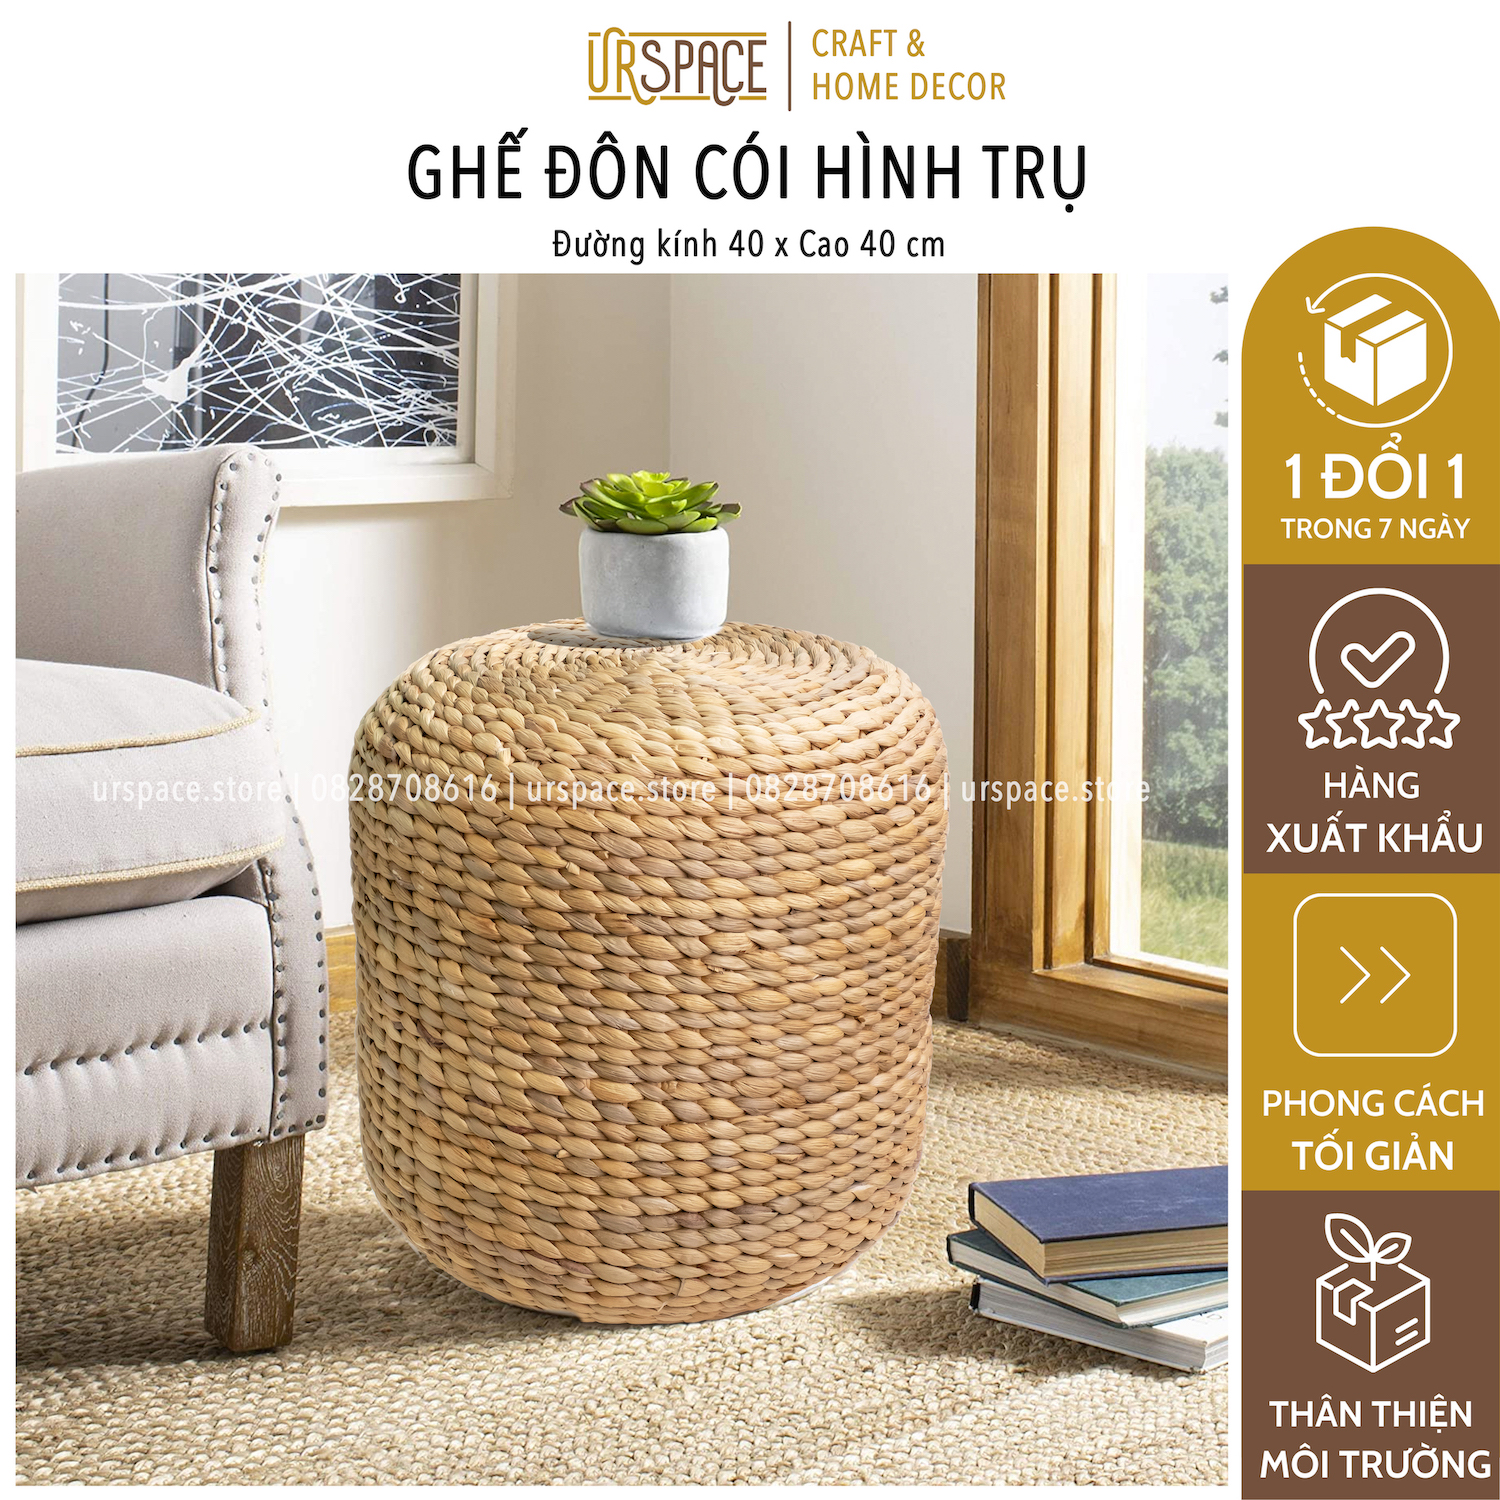 Ghế đôn sofa cói (bèo) hình trụ tròn đa năng D40xH40/ Hand-woven Water Hyacinth Ottoman Stool For Seating